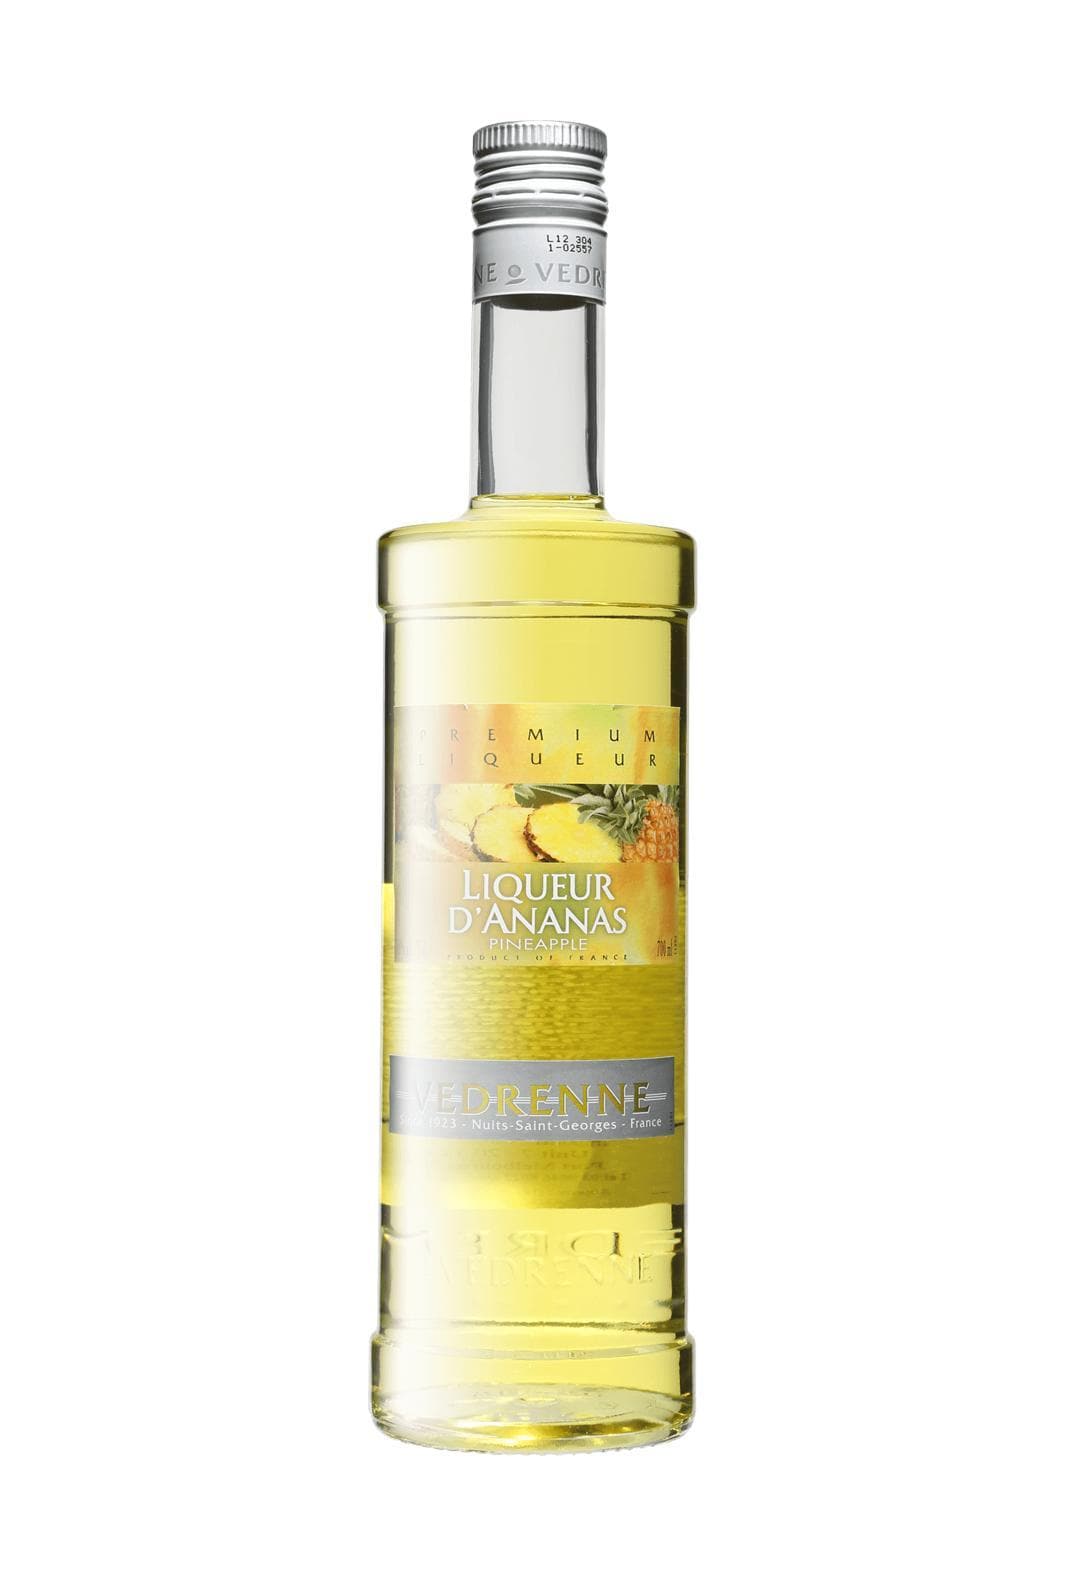 Vedrenne Liqueur Ananas (Pineapple) 18% 700ml | Liqueurs | Shop online at Spirits of France